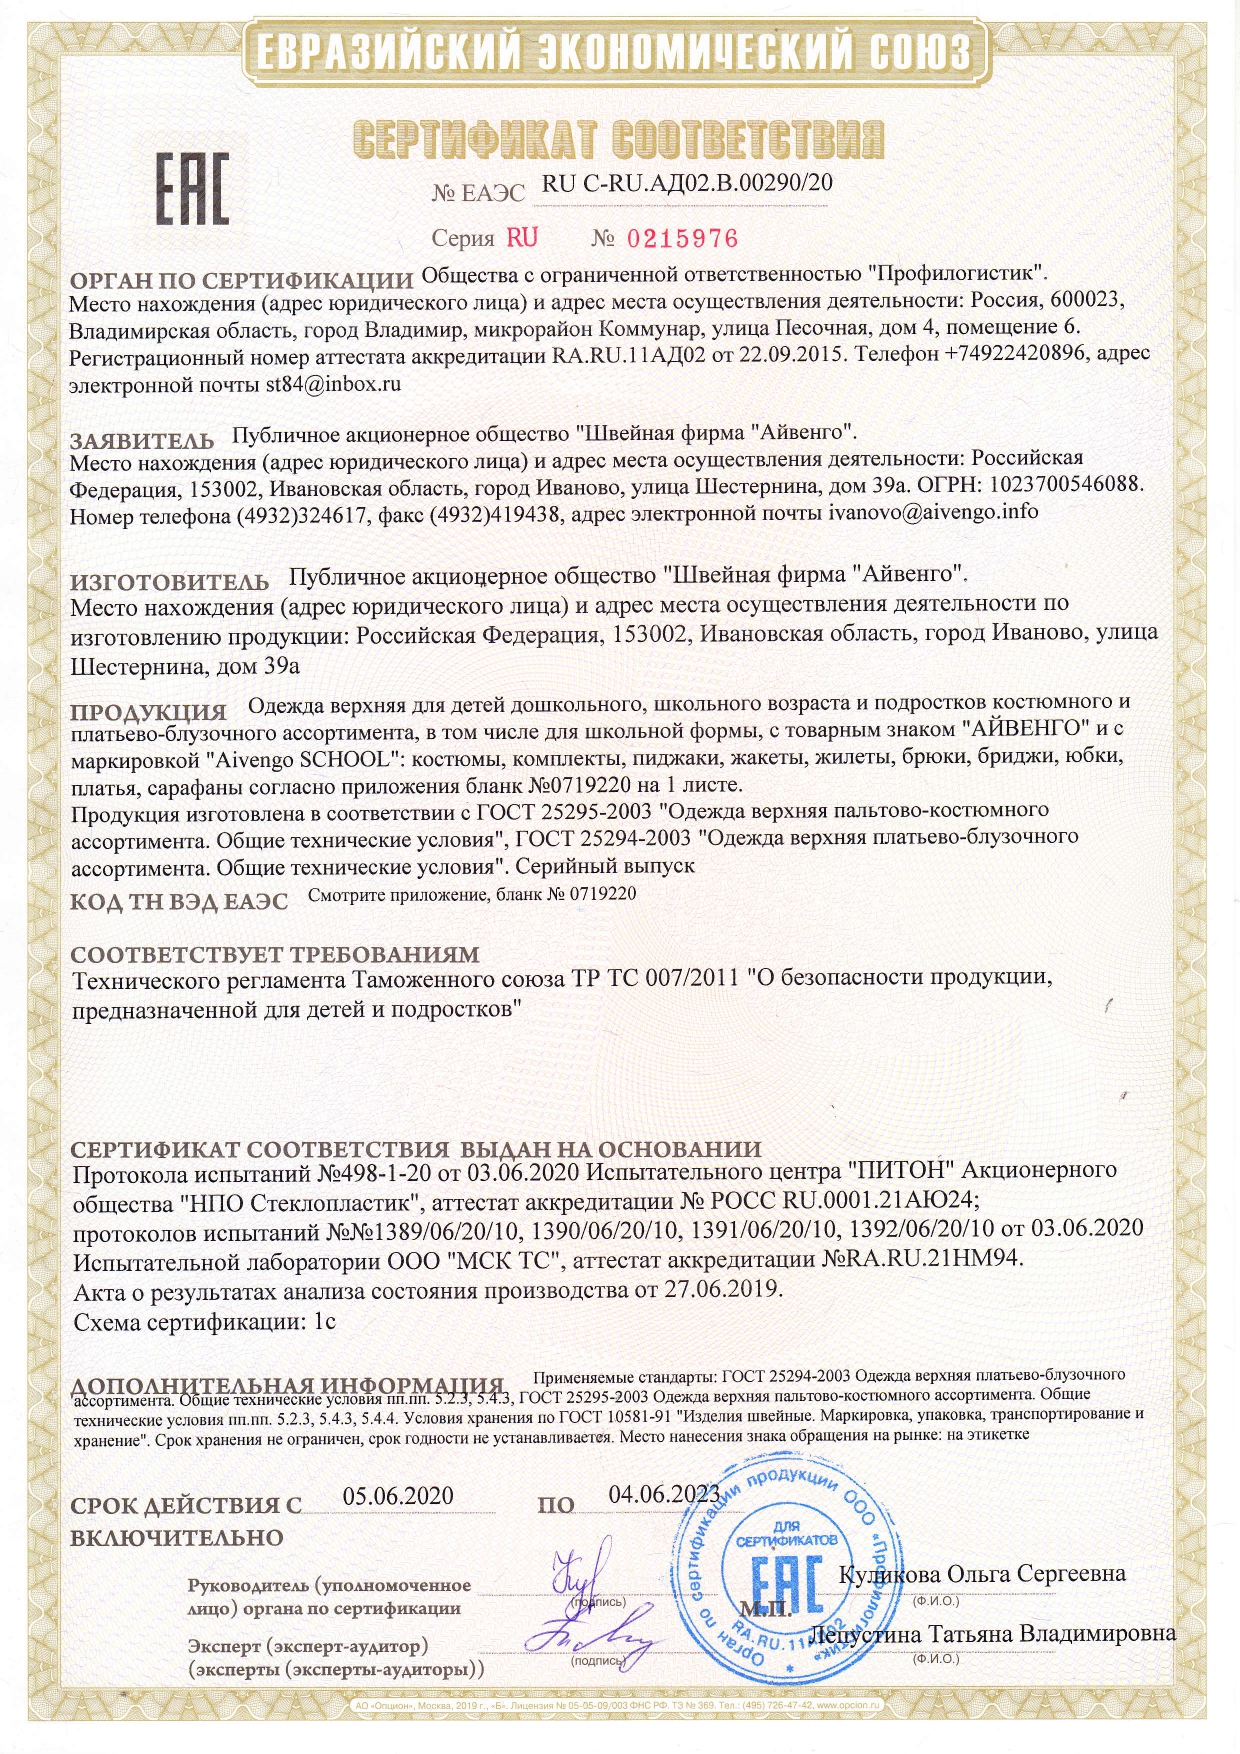  Сертификат соответствия  RU № 0215976